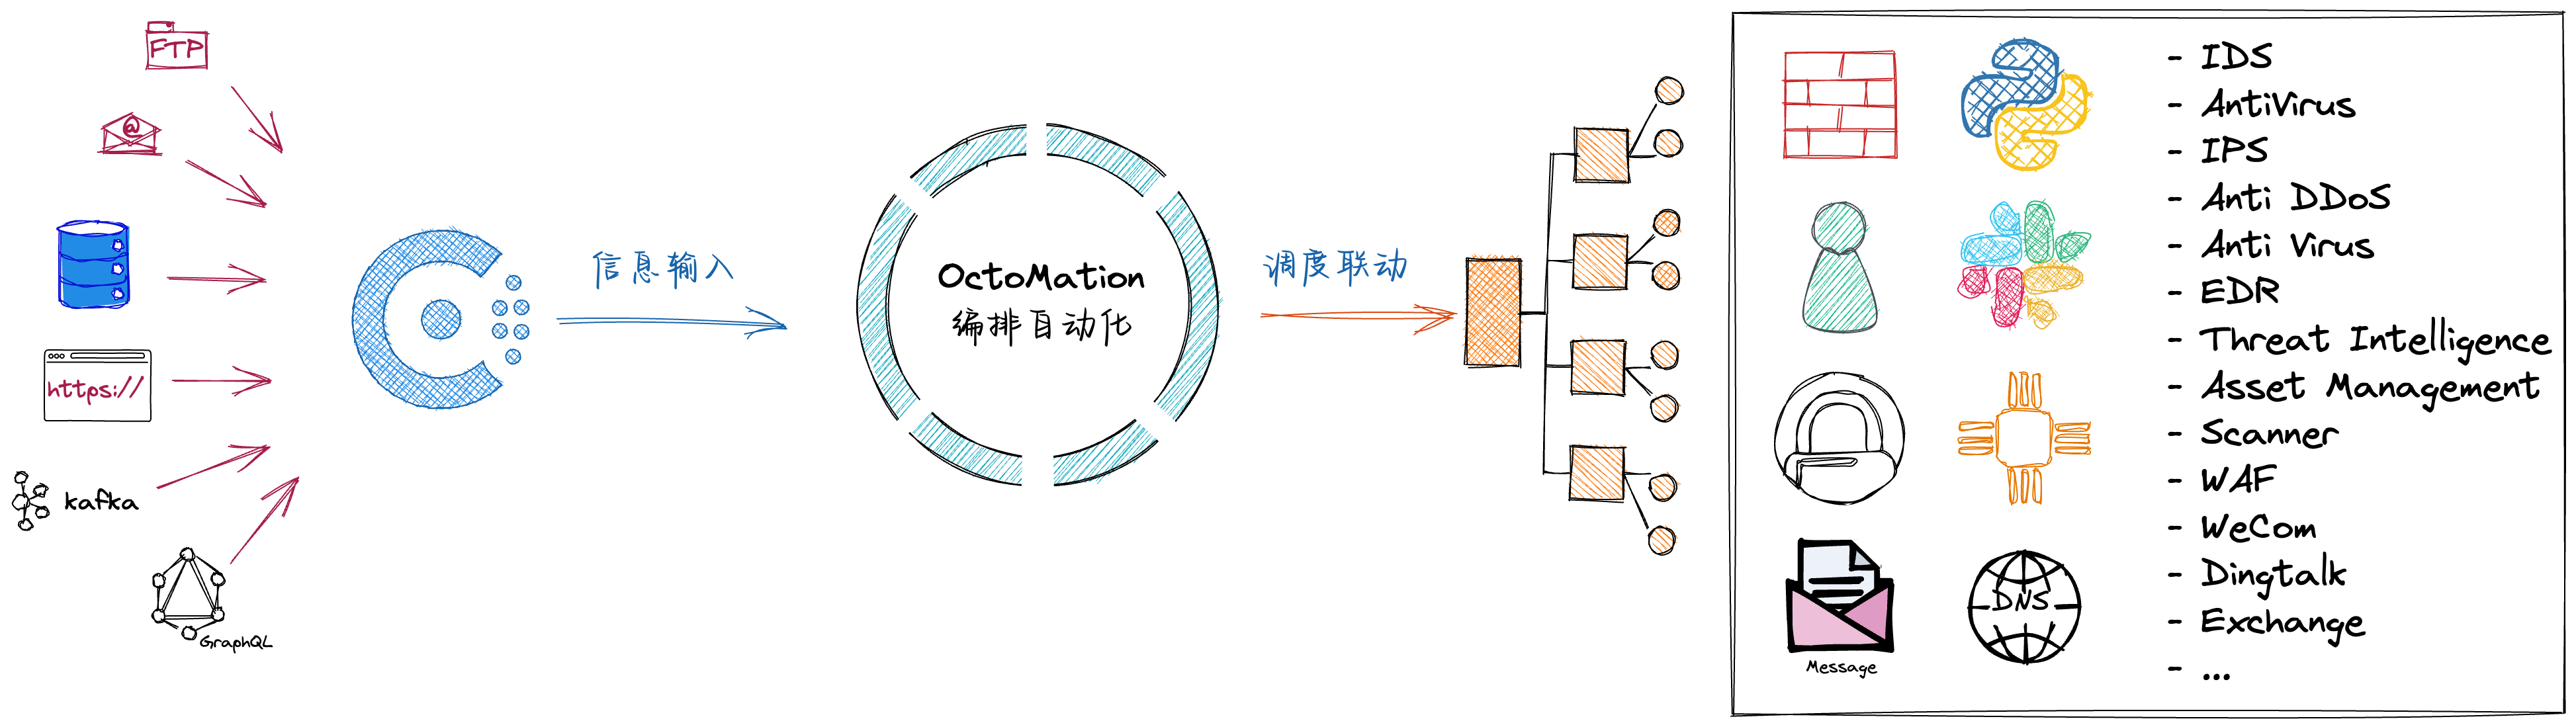 OctoMation编排自动化交流微信群